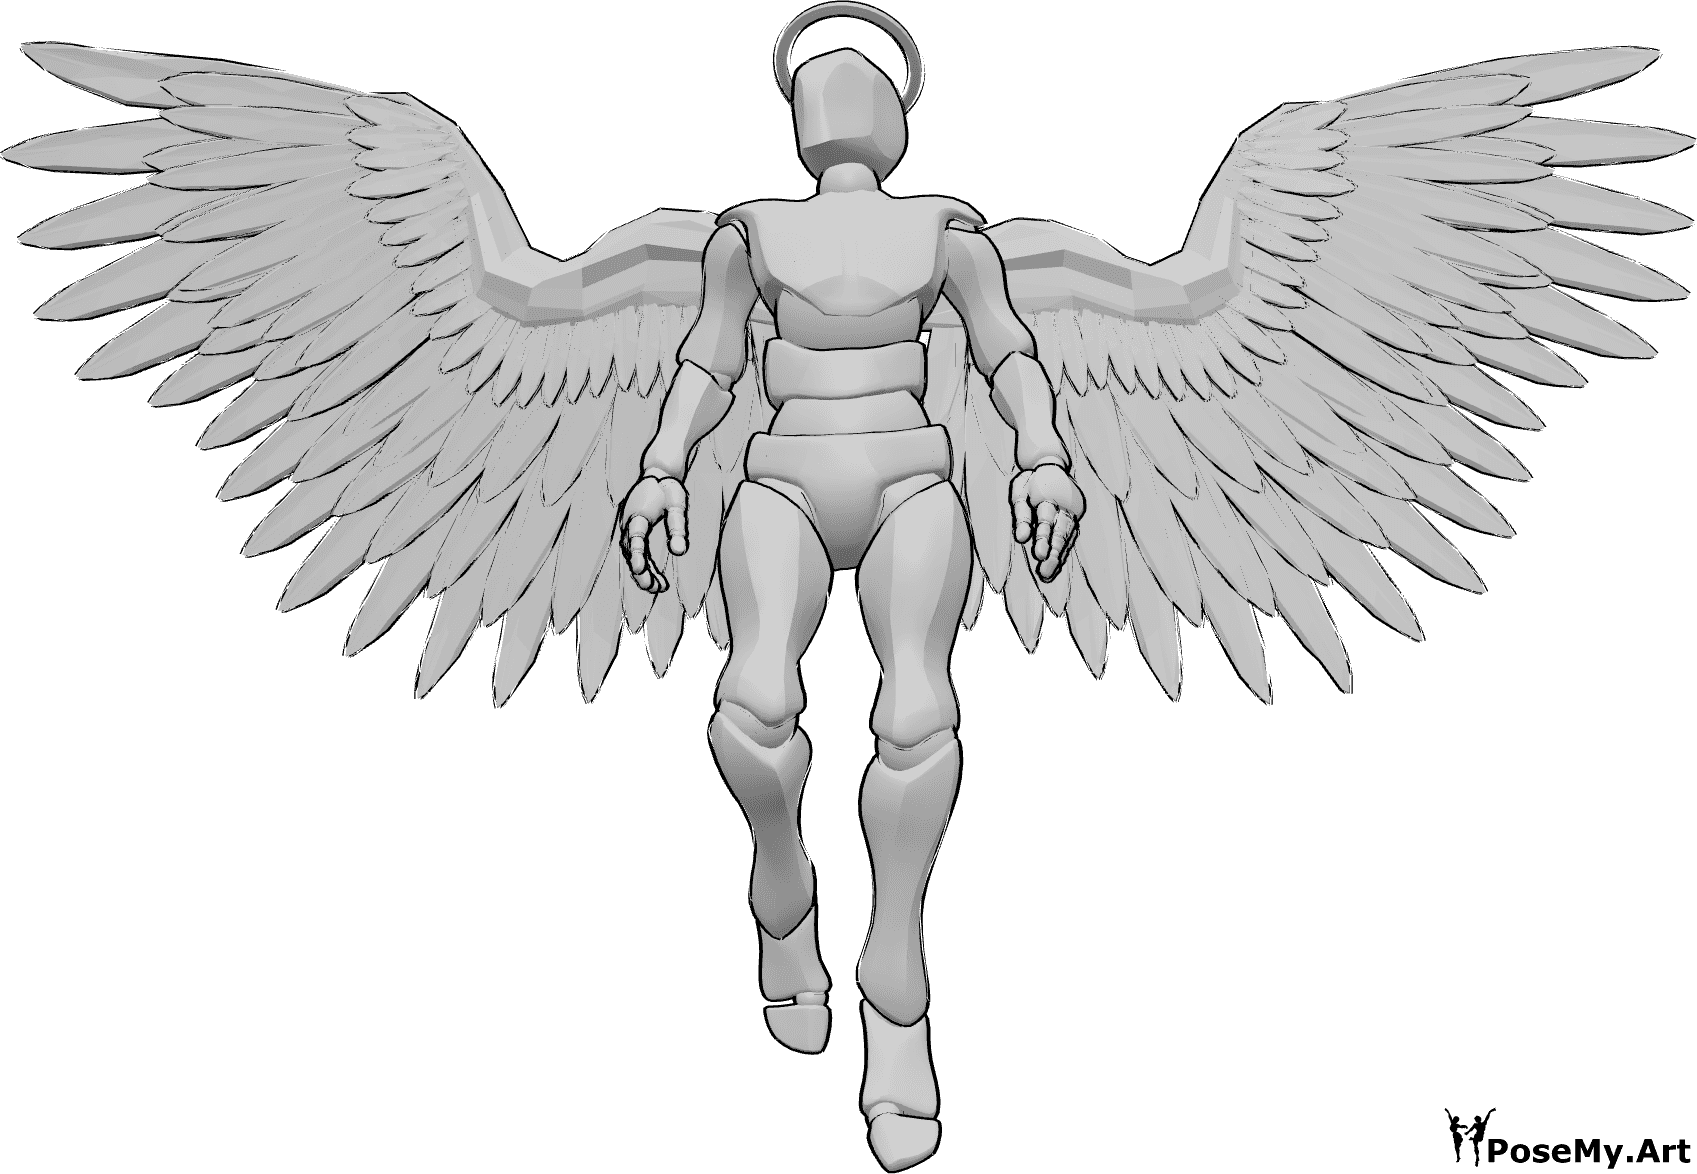 Posen-Referenz- Männlicher Engel fliegende Pose - Männlicher Engel mit Heiligenschein und Flügeln fliegt nach oben und schaut nach rechts